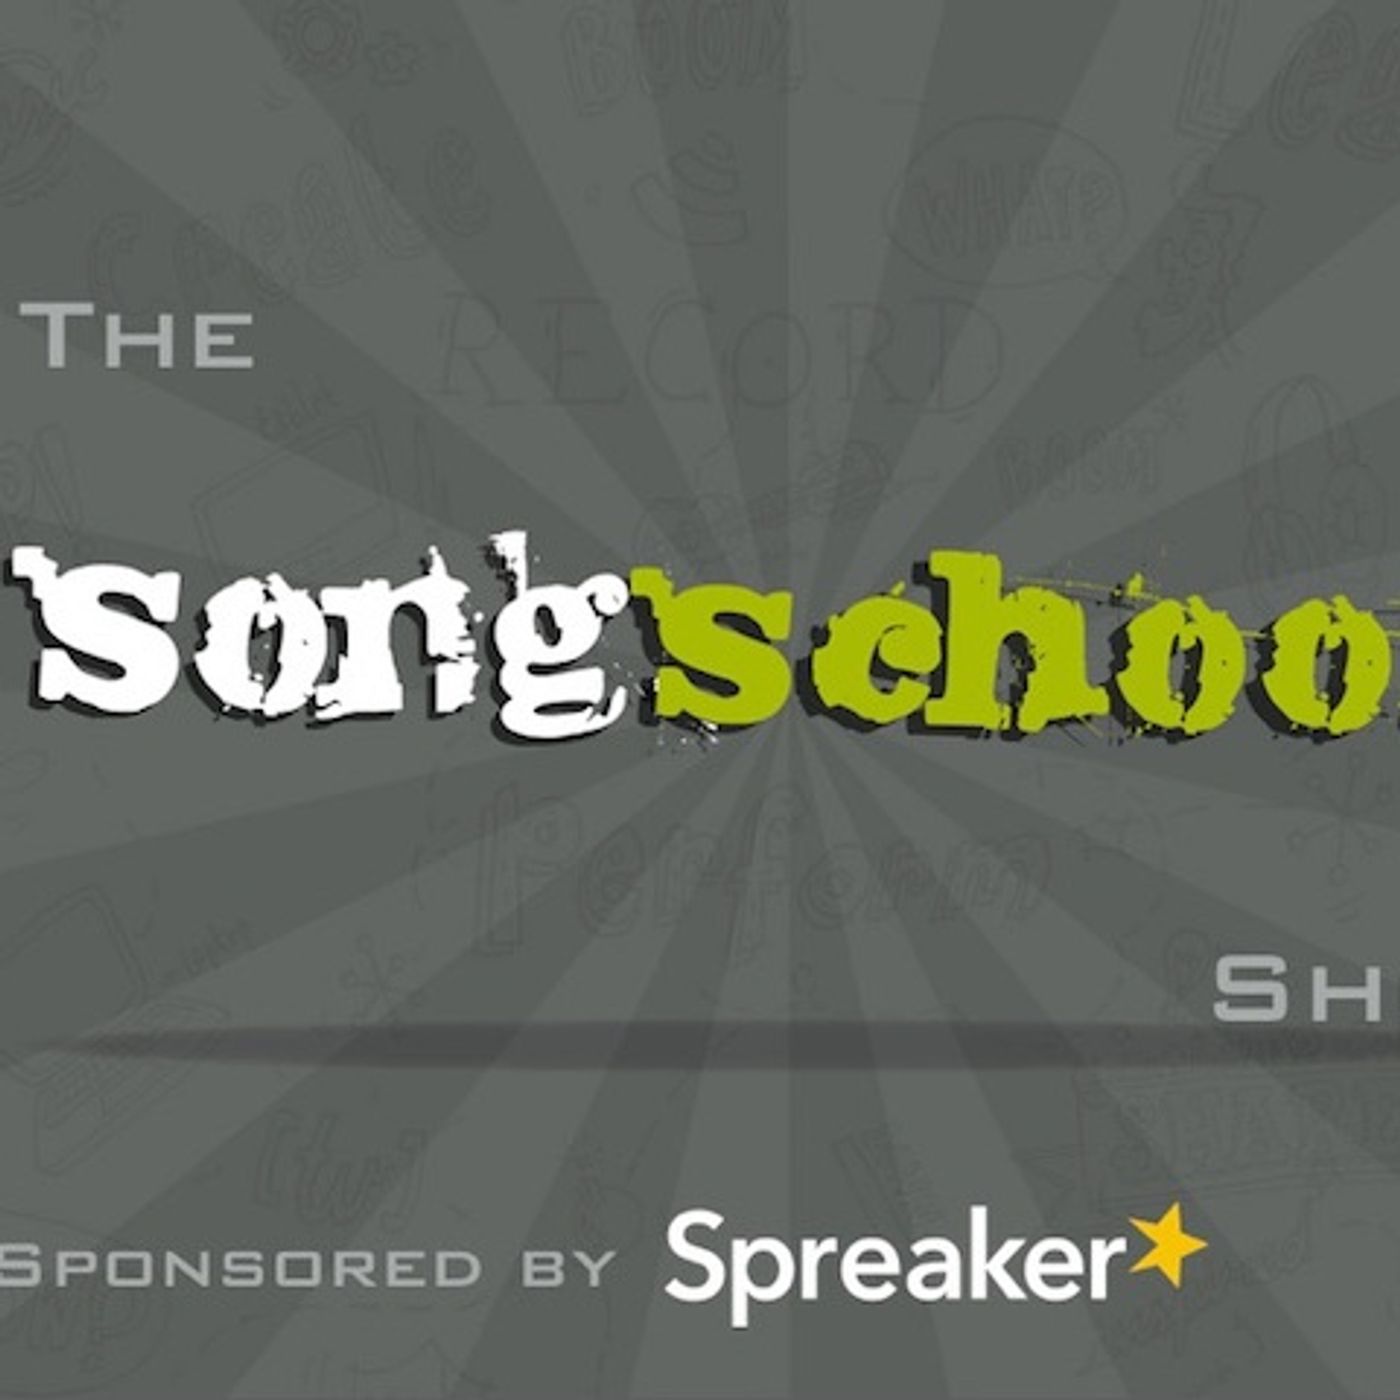 The Songschool Show @ Colaiste Iosagain (1:3)